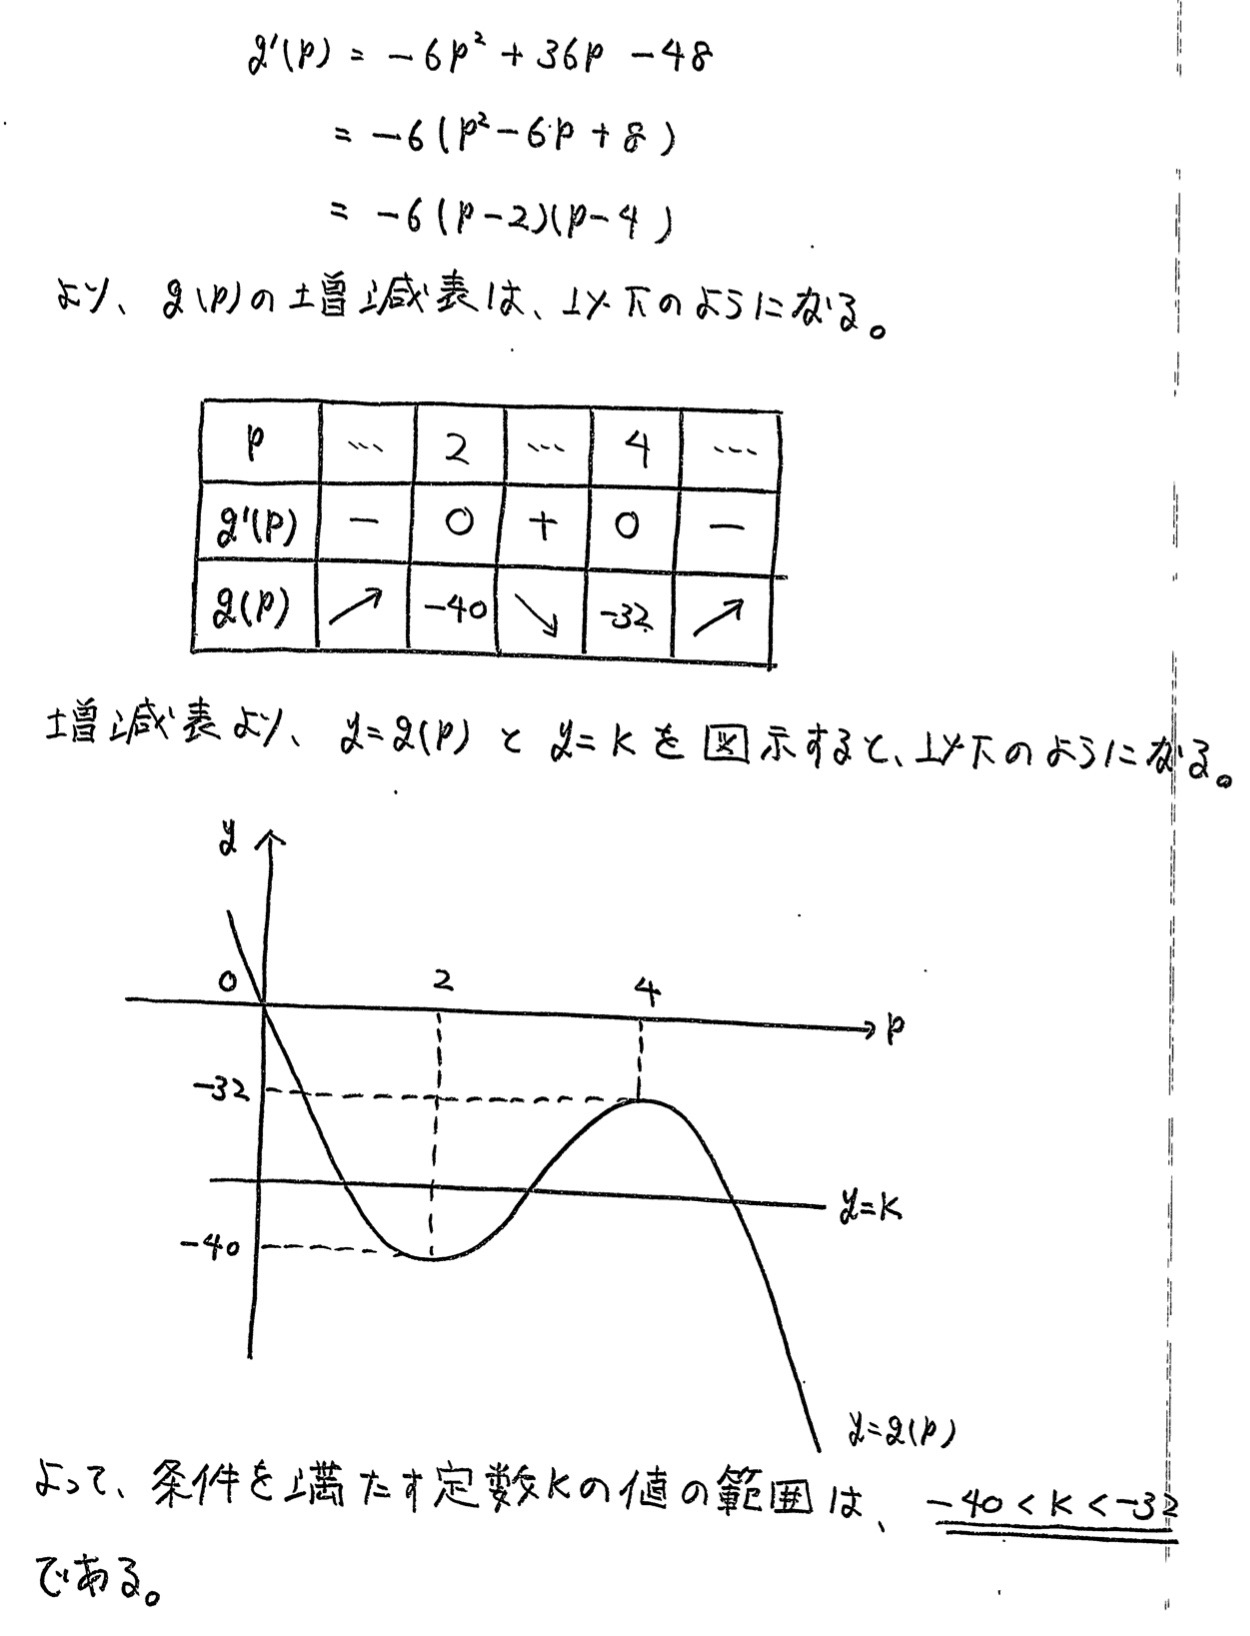 香川大学入試文系数学2022年(令和4年)過去問題(解答・解説)